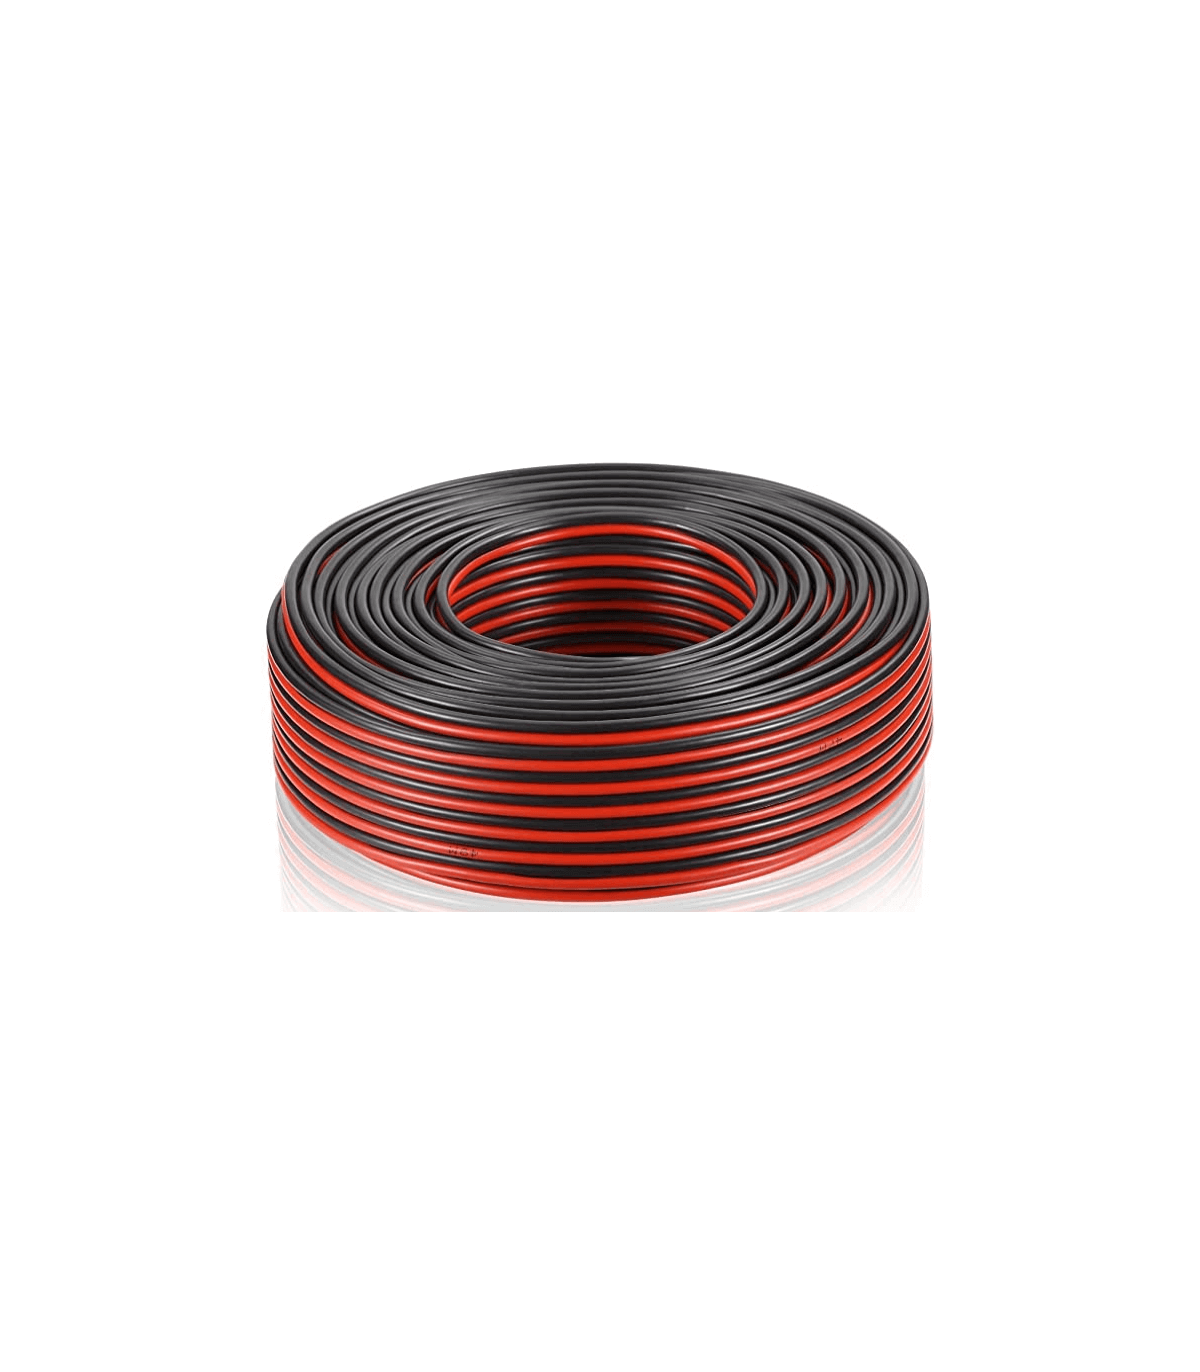 Câble enceinte hifi 2x0.75mm², 50m, noir et rouge, LEXMAN